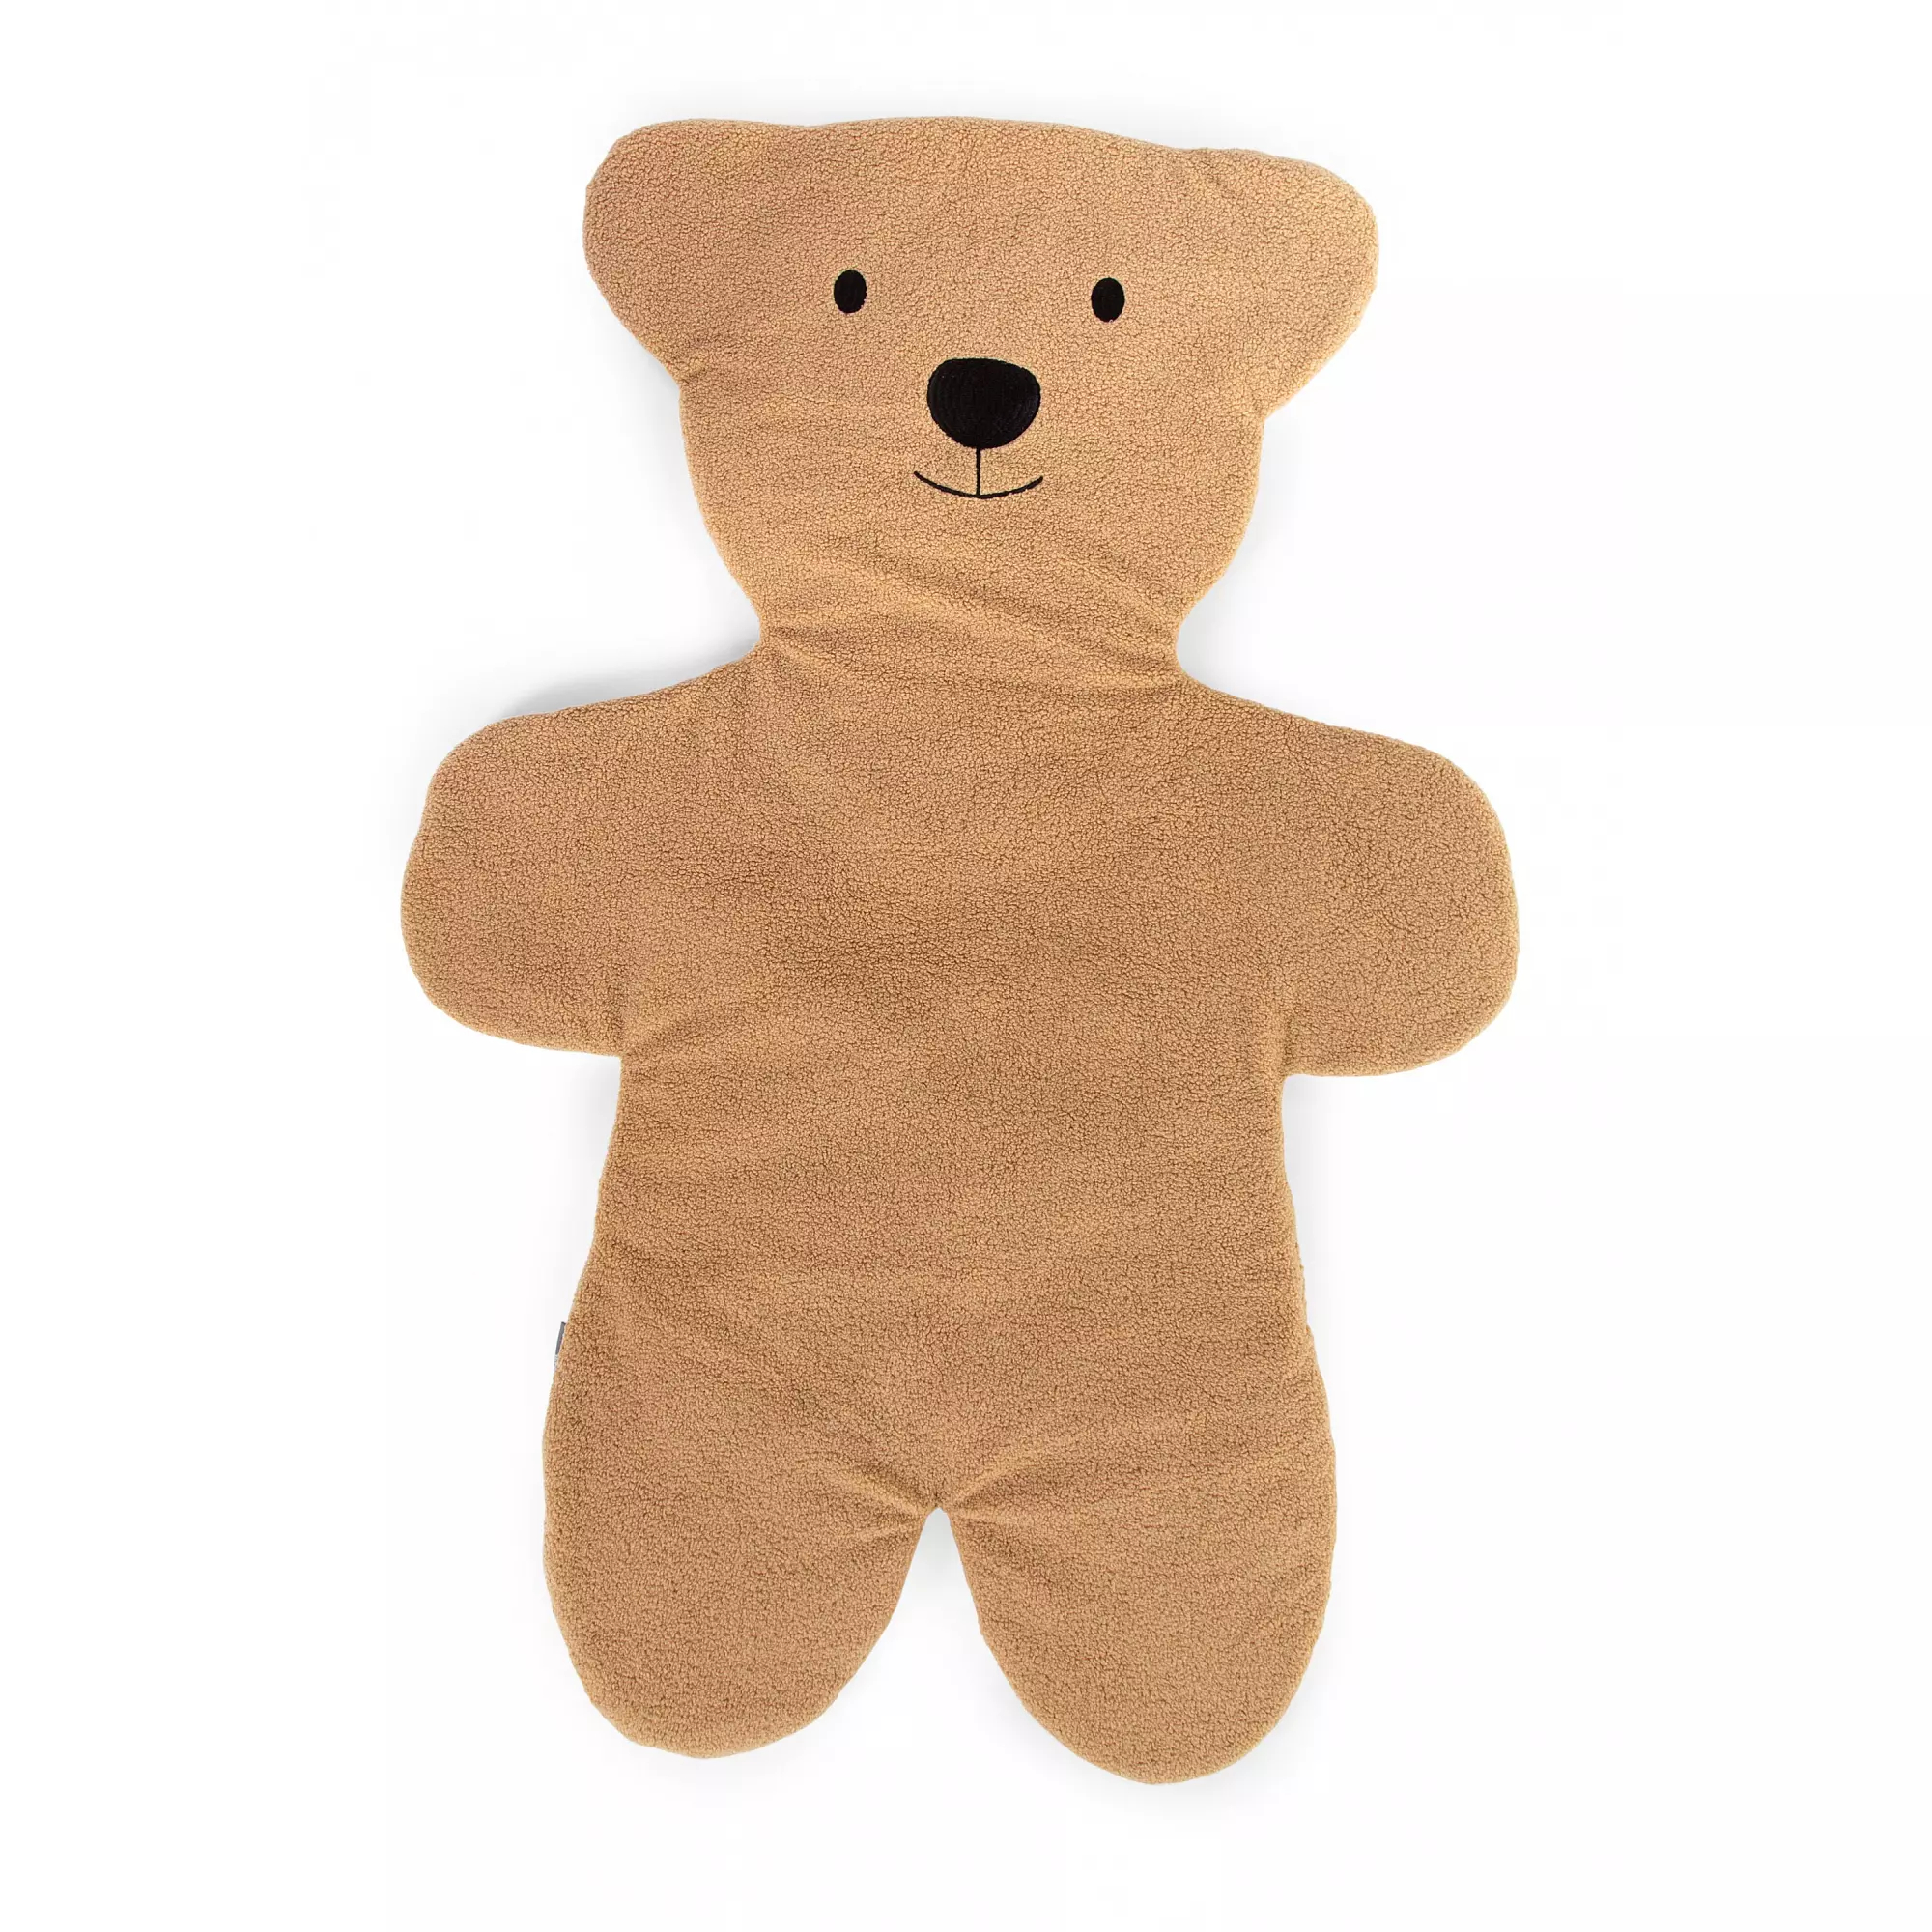 CHILDHOME - Hrací deka medvěd Teddy 150cm